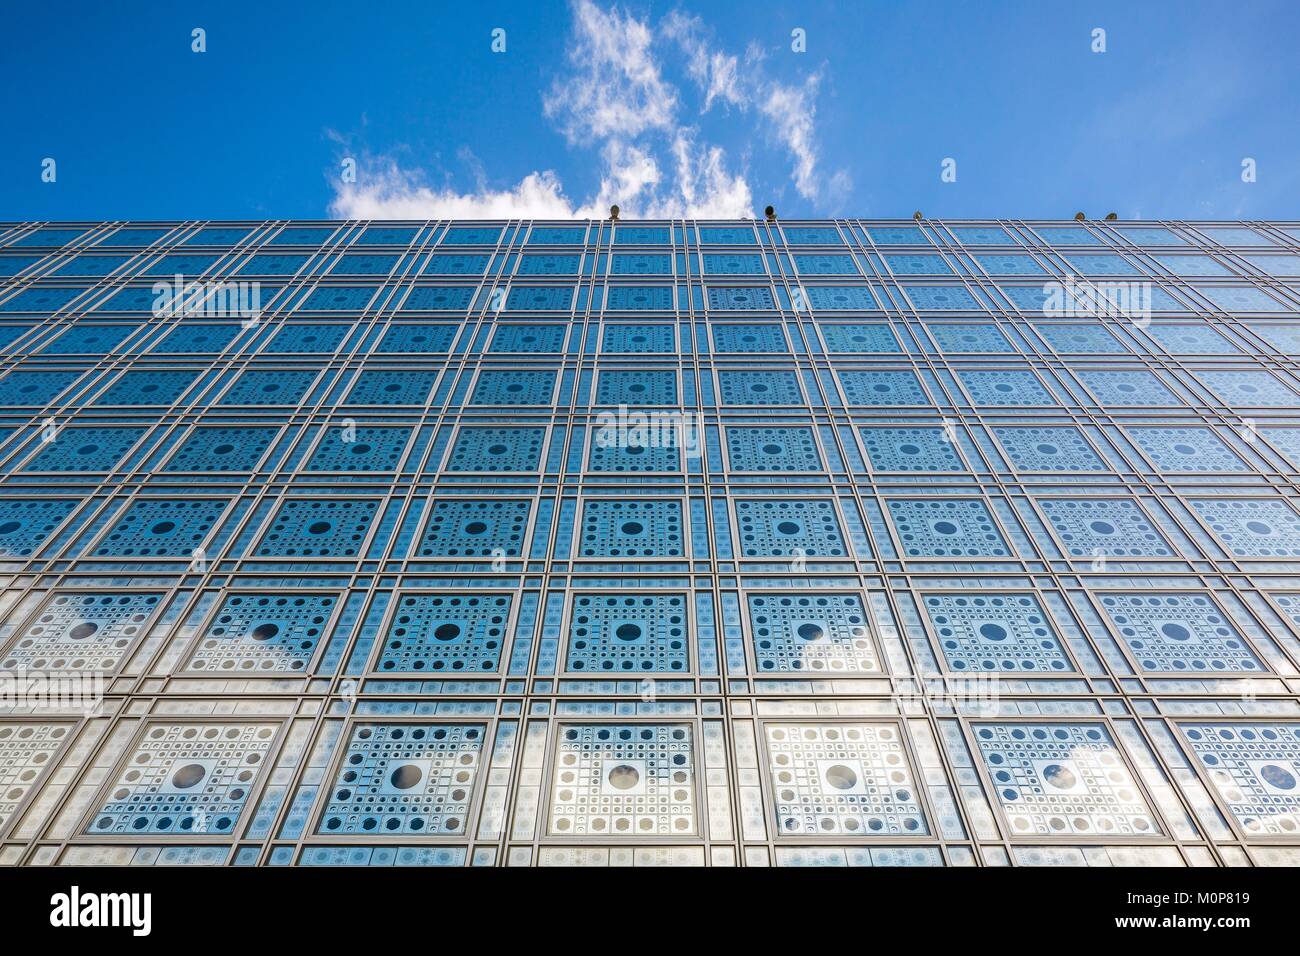 France, Paris, Institut du Monde Arabe (IMA), conçu par les architectes Jean Nouvel et Architecture-Studio Banque D'Images